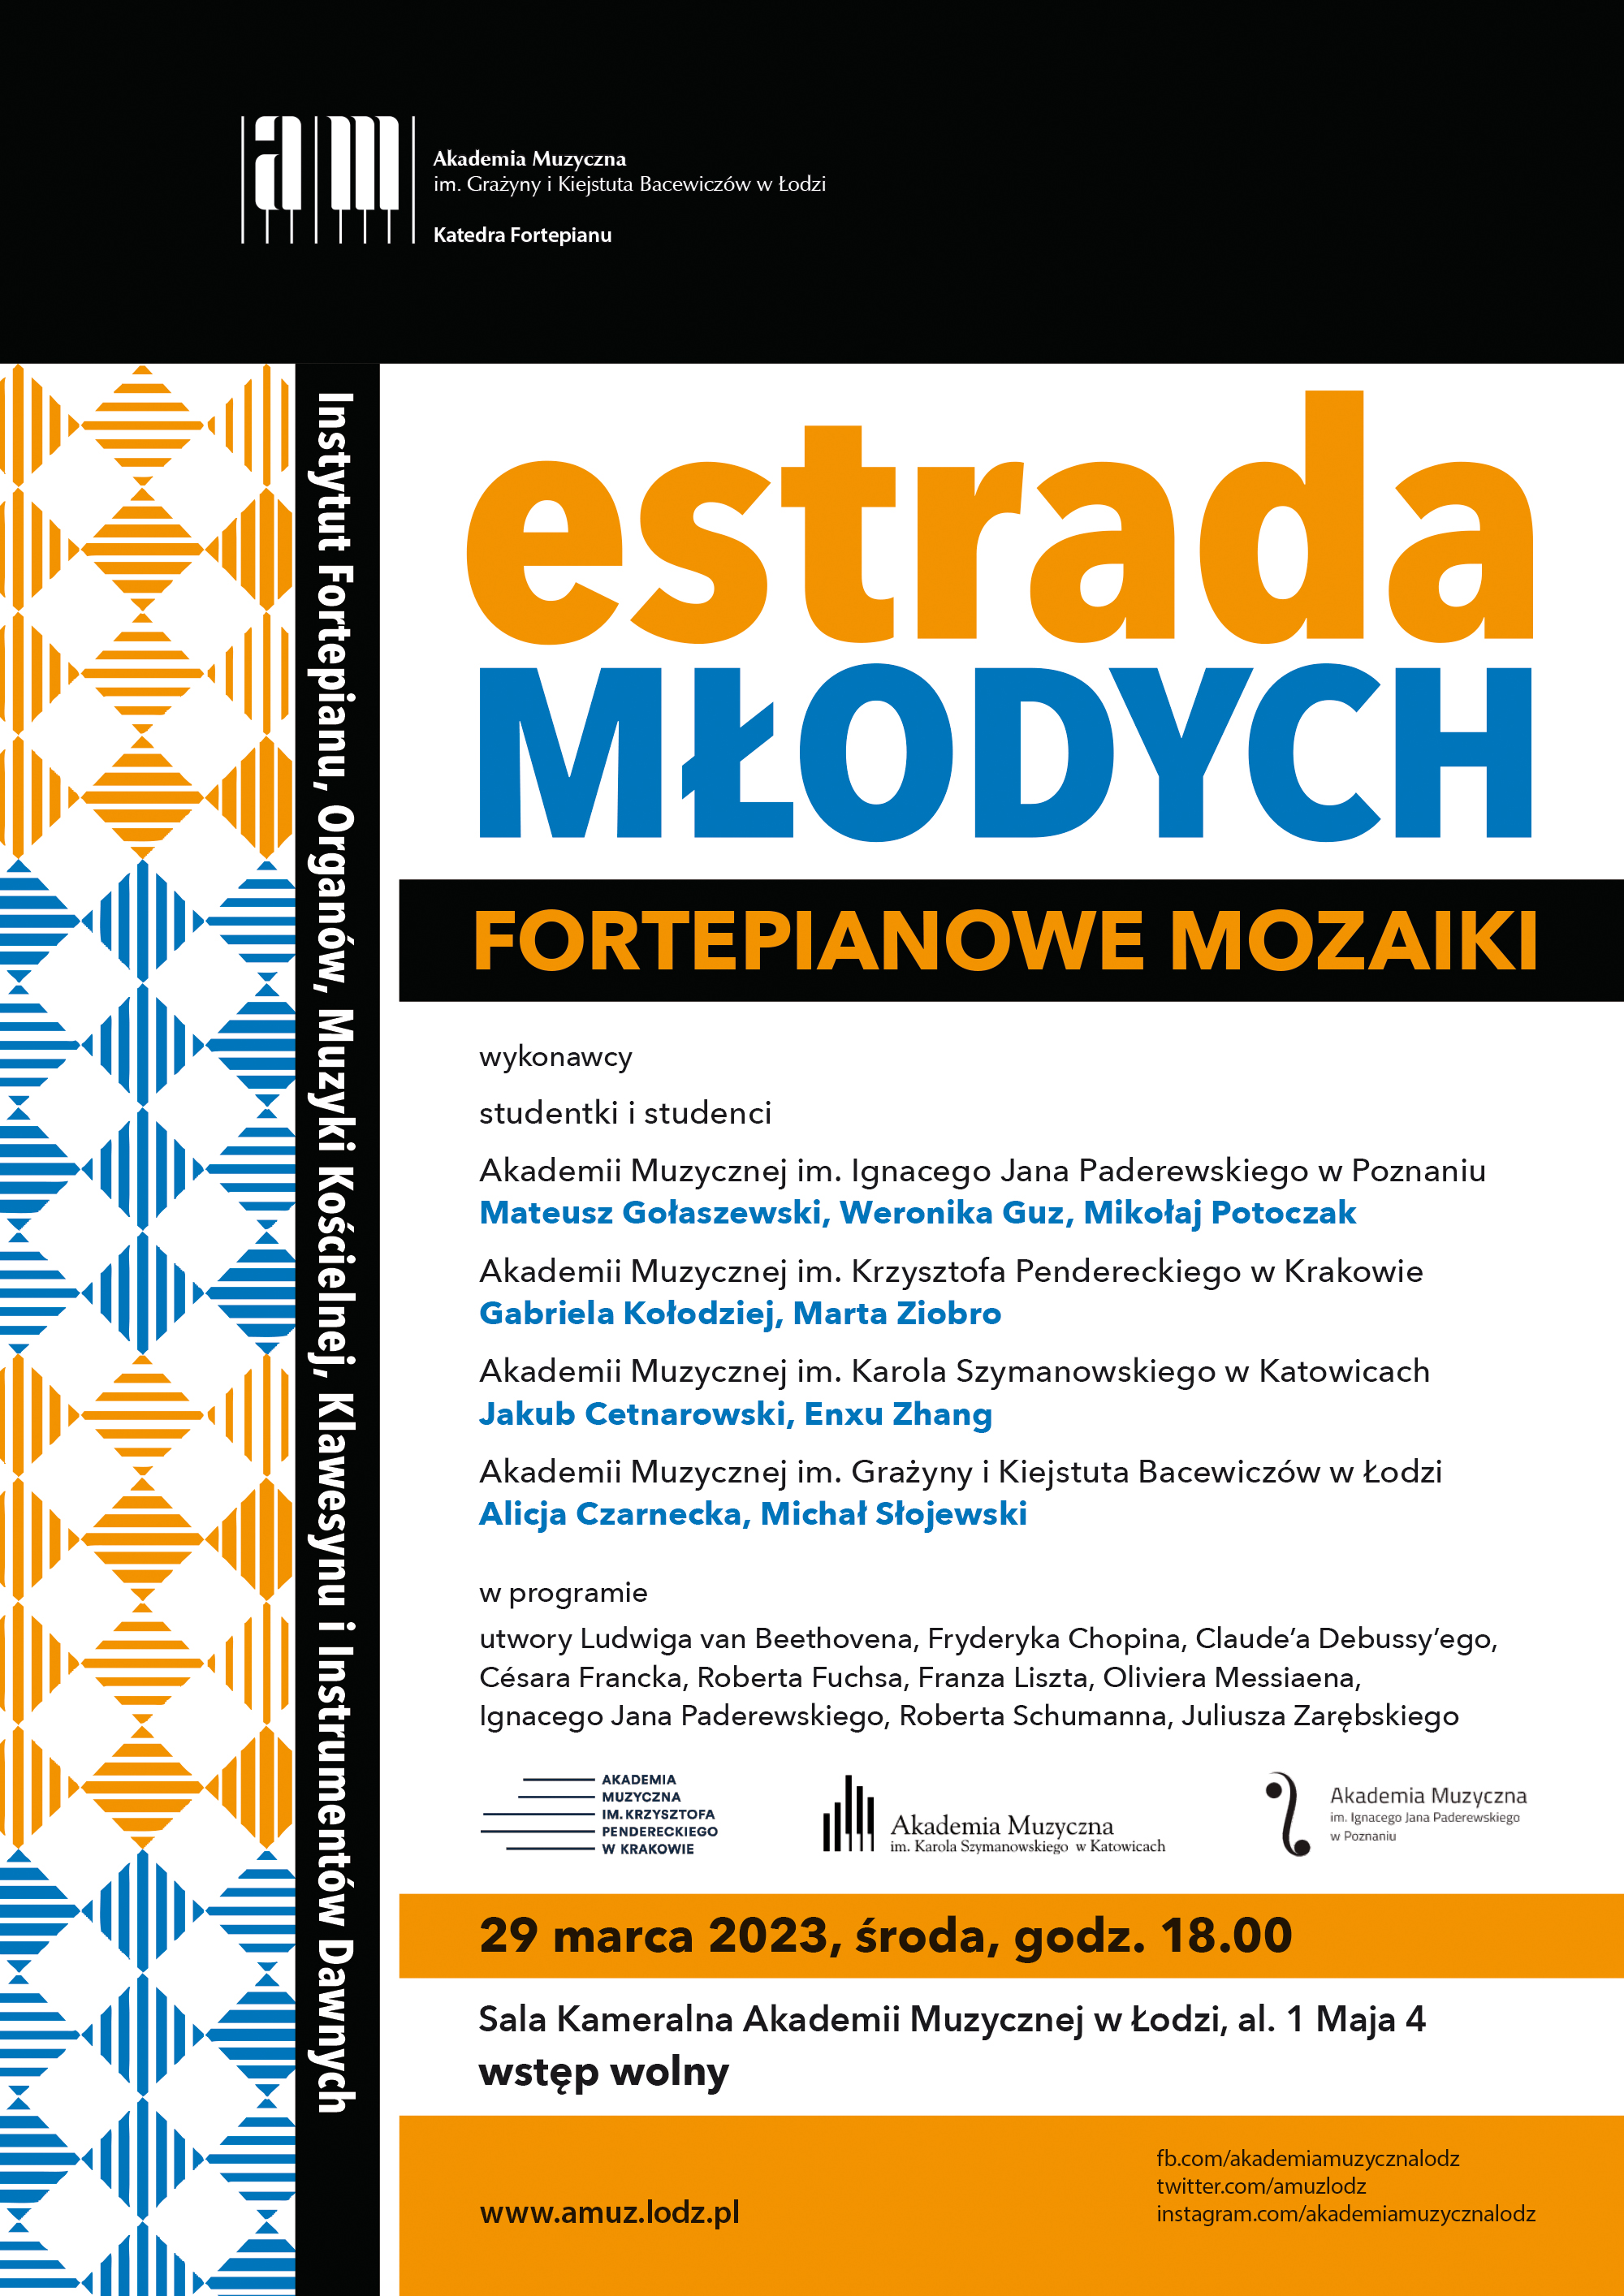 Koncert z cyklu ESTRADA MŁODYCH / Fortepianowe mozaiki